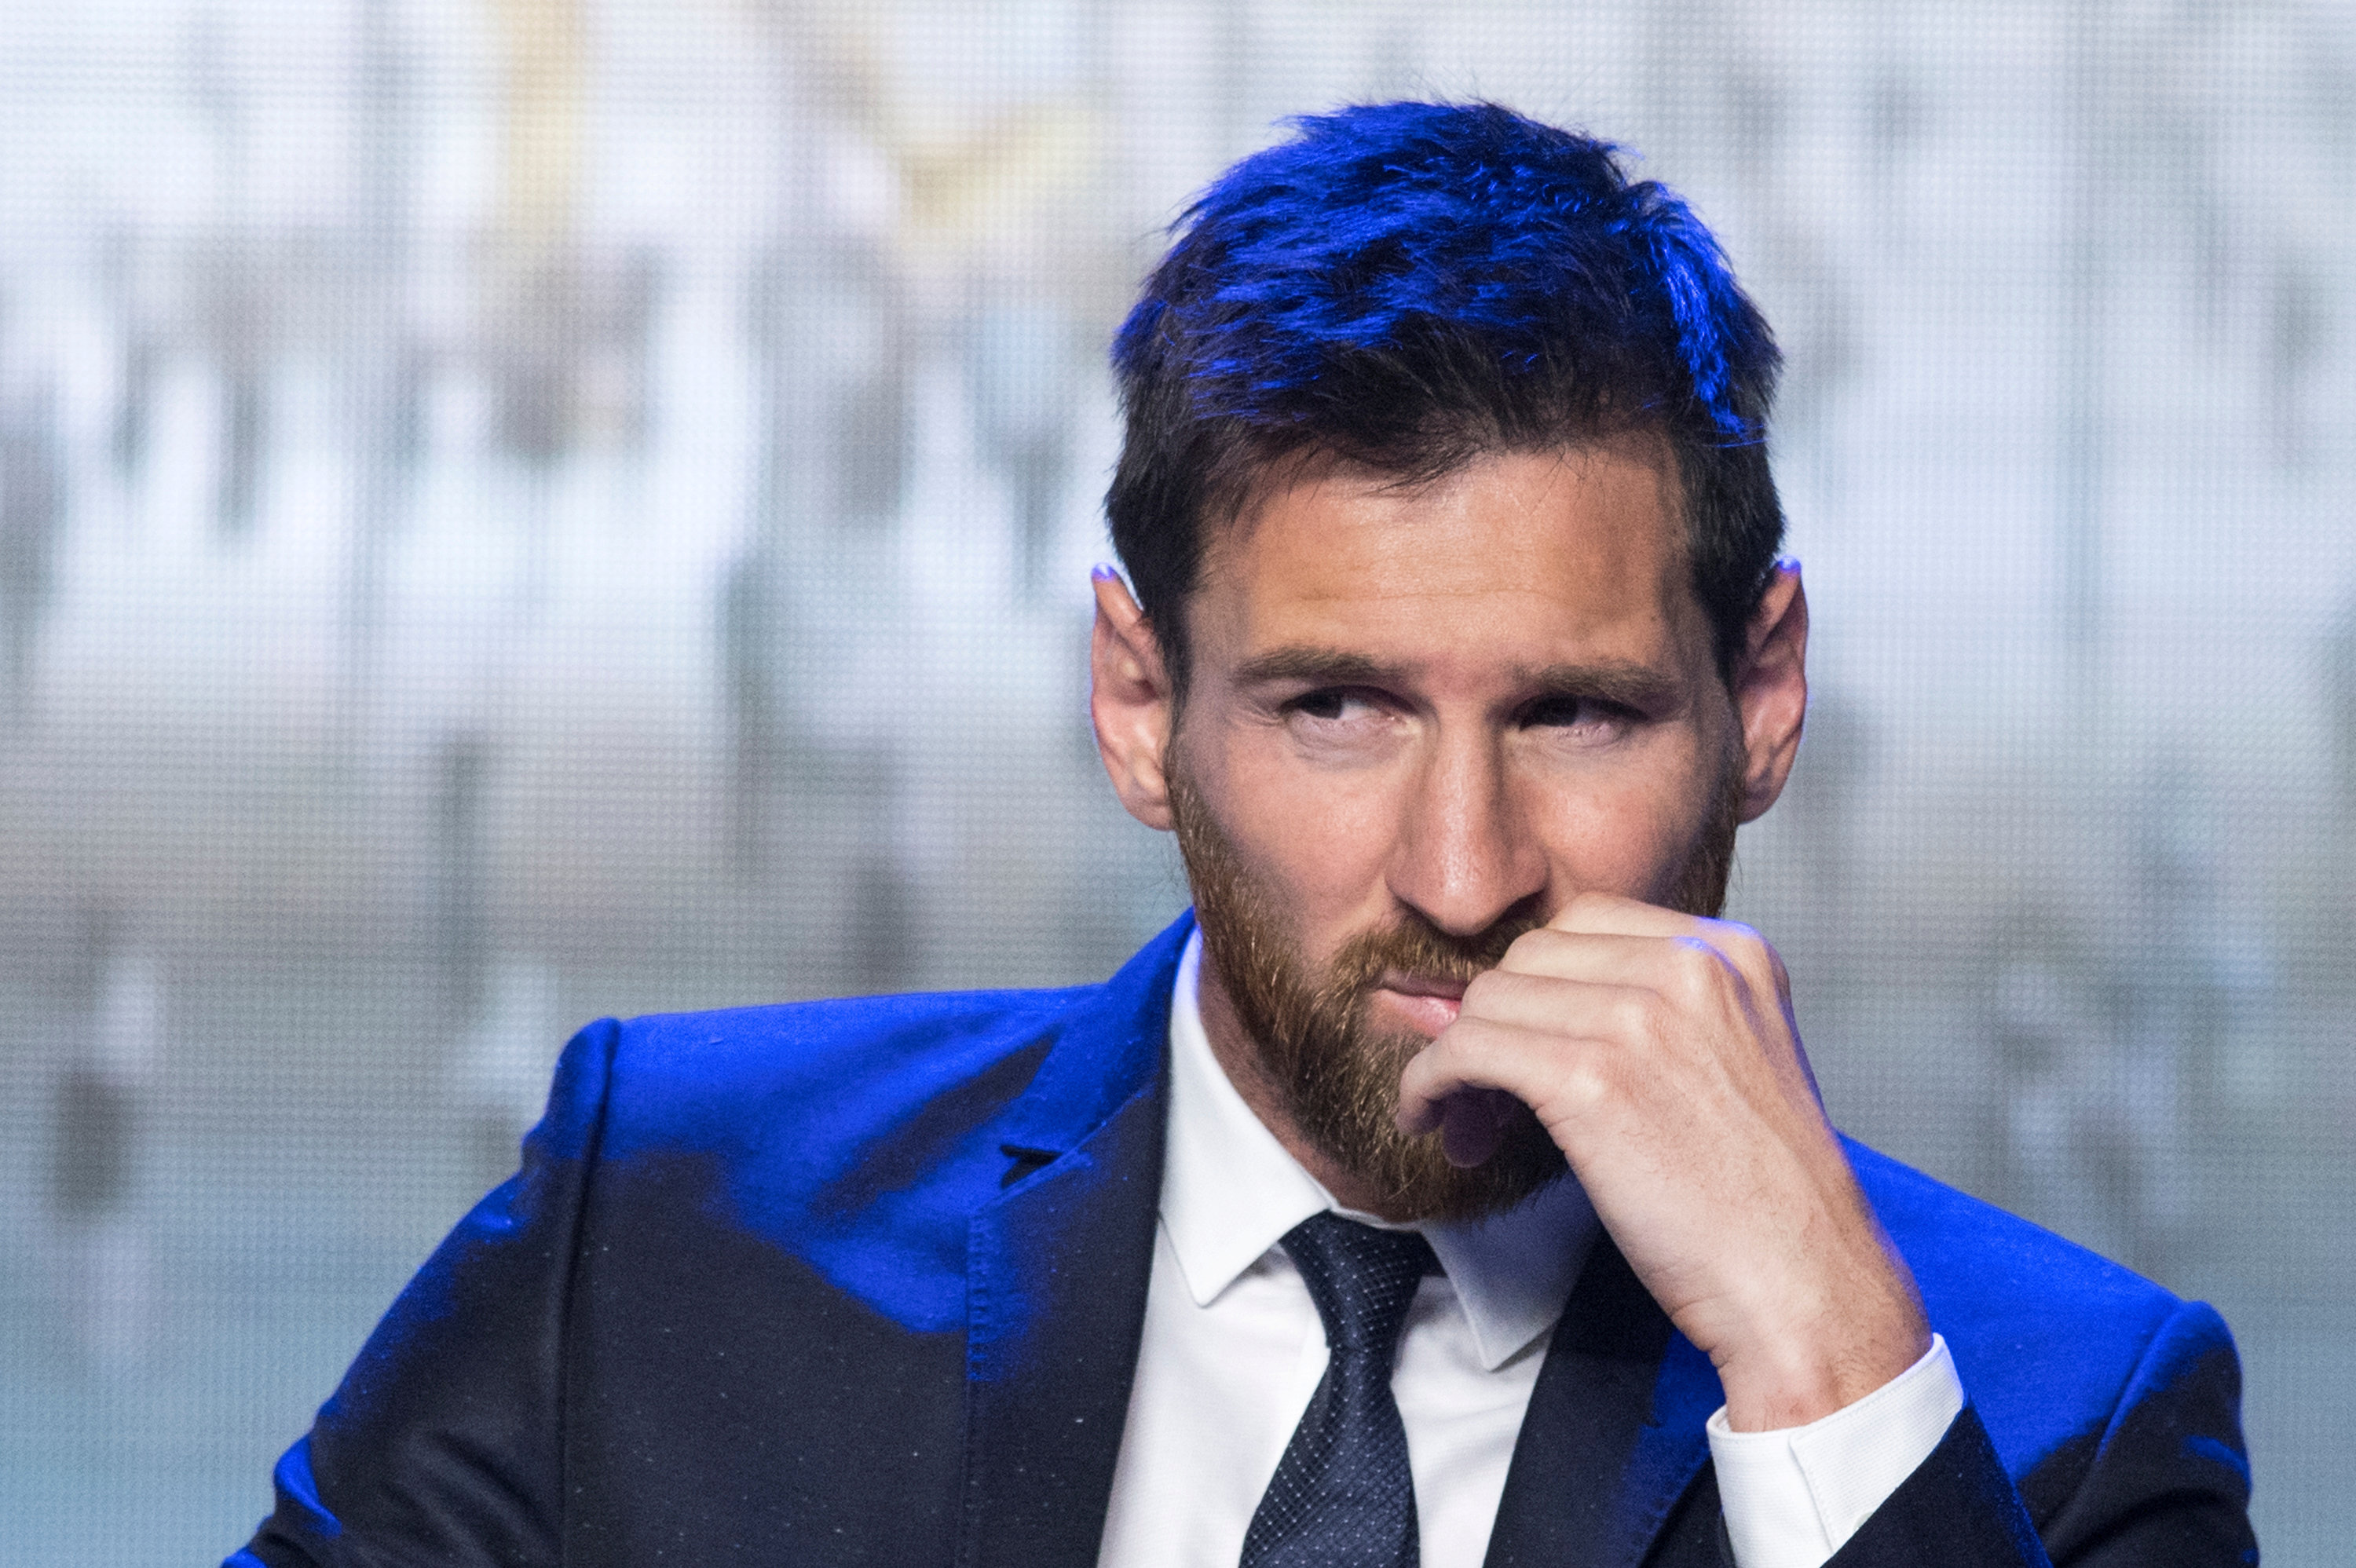 Audiencia sustituye pena de cárcel a Messi por multa de 288.000 dólares